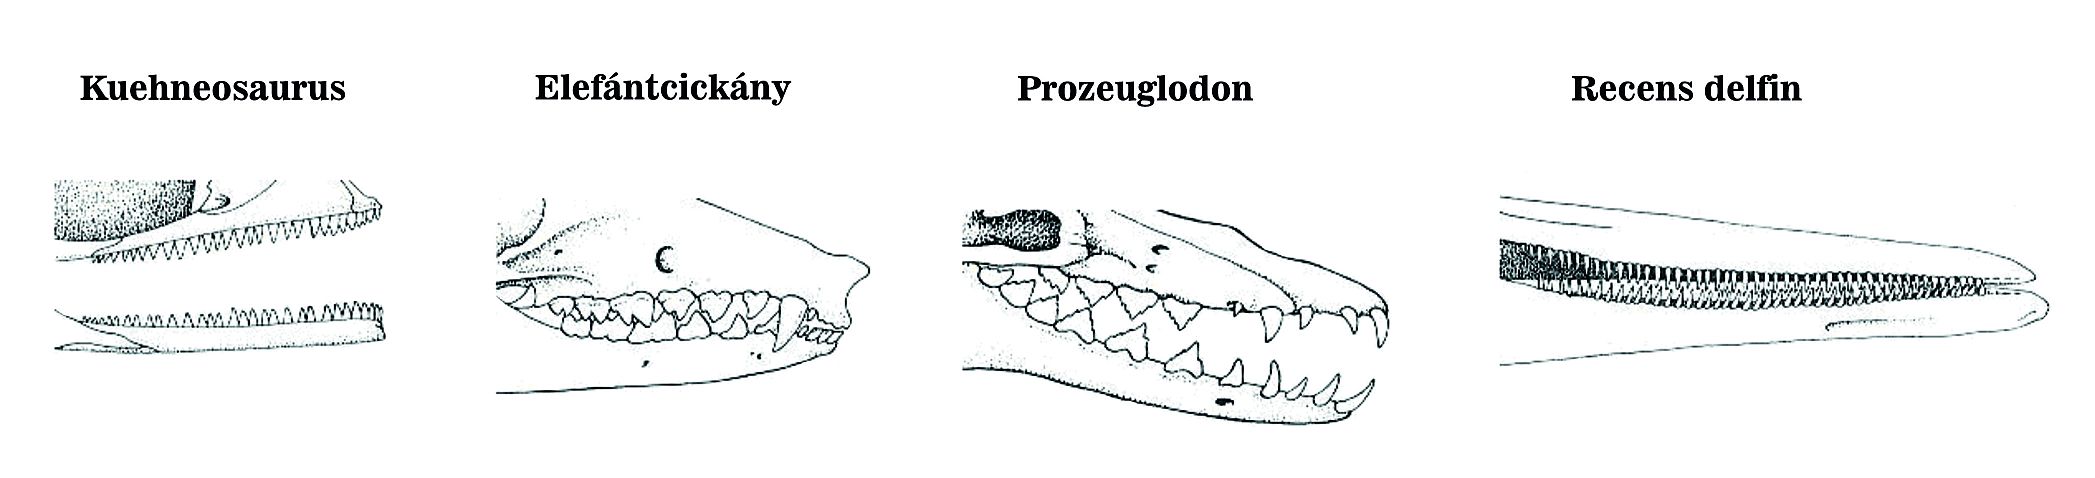 A fogazat kiegyénülése ritka esetben visszafordulhat. A hüllőknél a fogazat egységes, az emlősöknél (elefántcickány) heterodont fogazatot találunk, azaz a fogak egyediek, a kezdetleges bálnáknál már megfigyelhető a fogak dedifferenciációja (Prozeuglodon), a modern fogascetek (delfinek) fogazata homodont, azaz a fogak egységesek